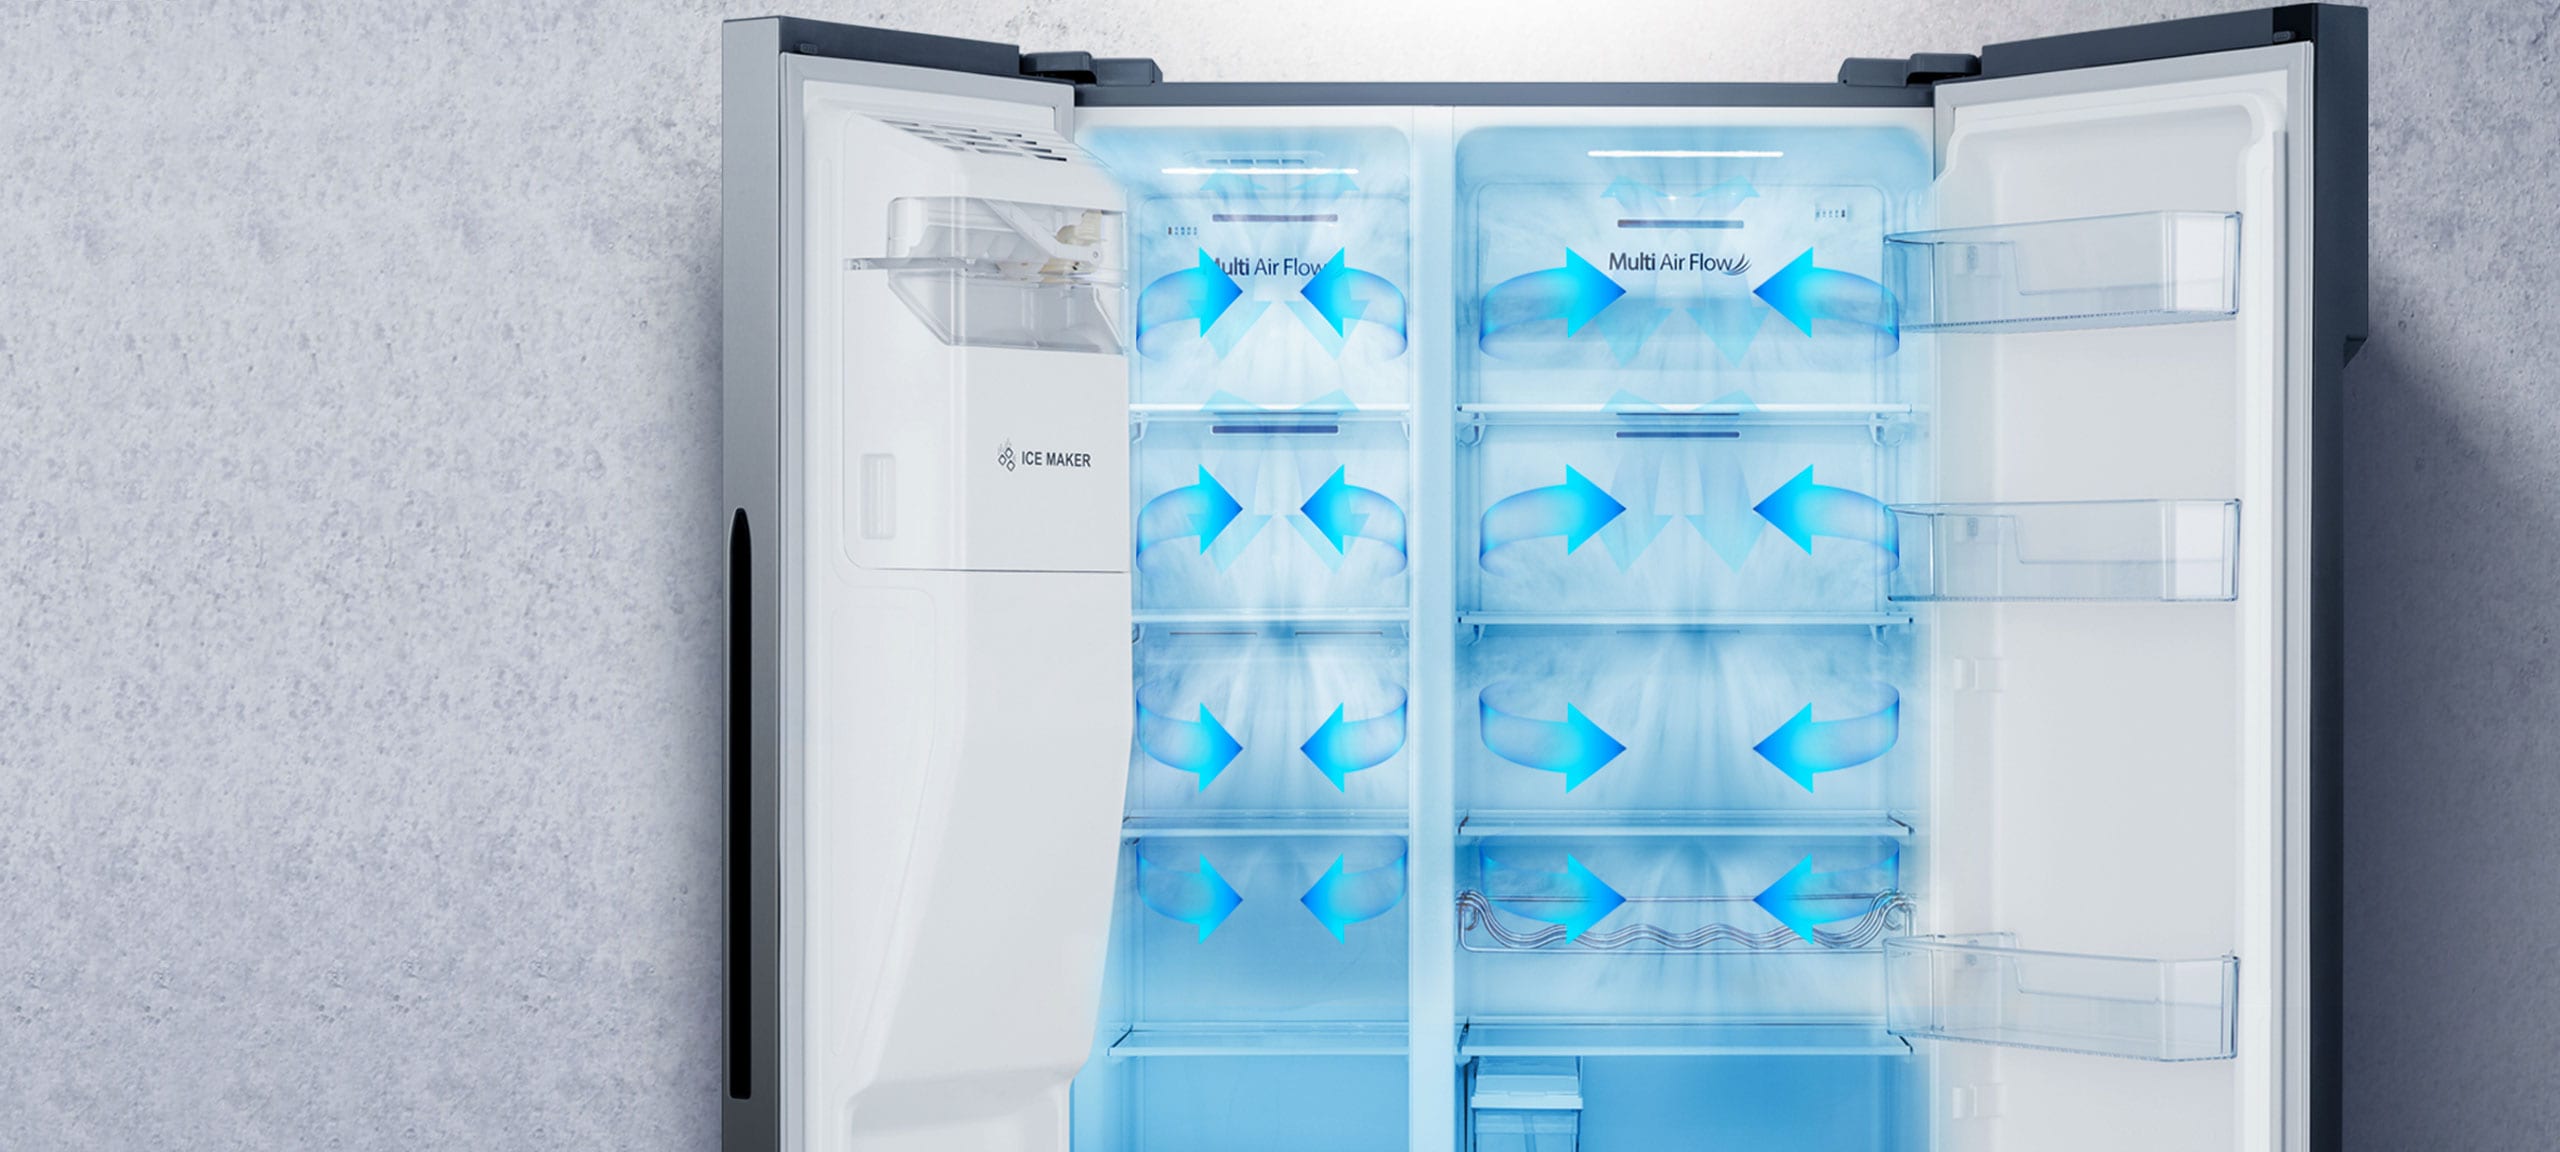 Réfrigérateur multiportes RF540N4SWIE, Hisense